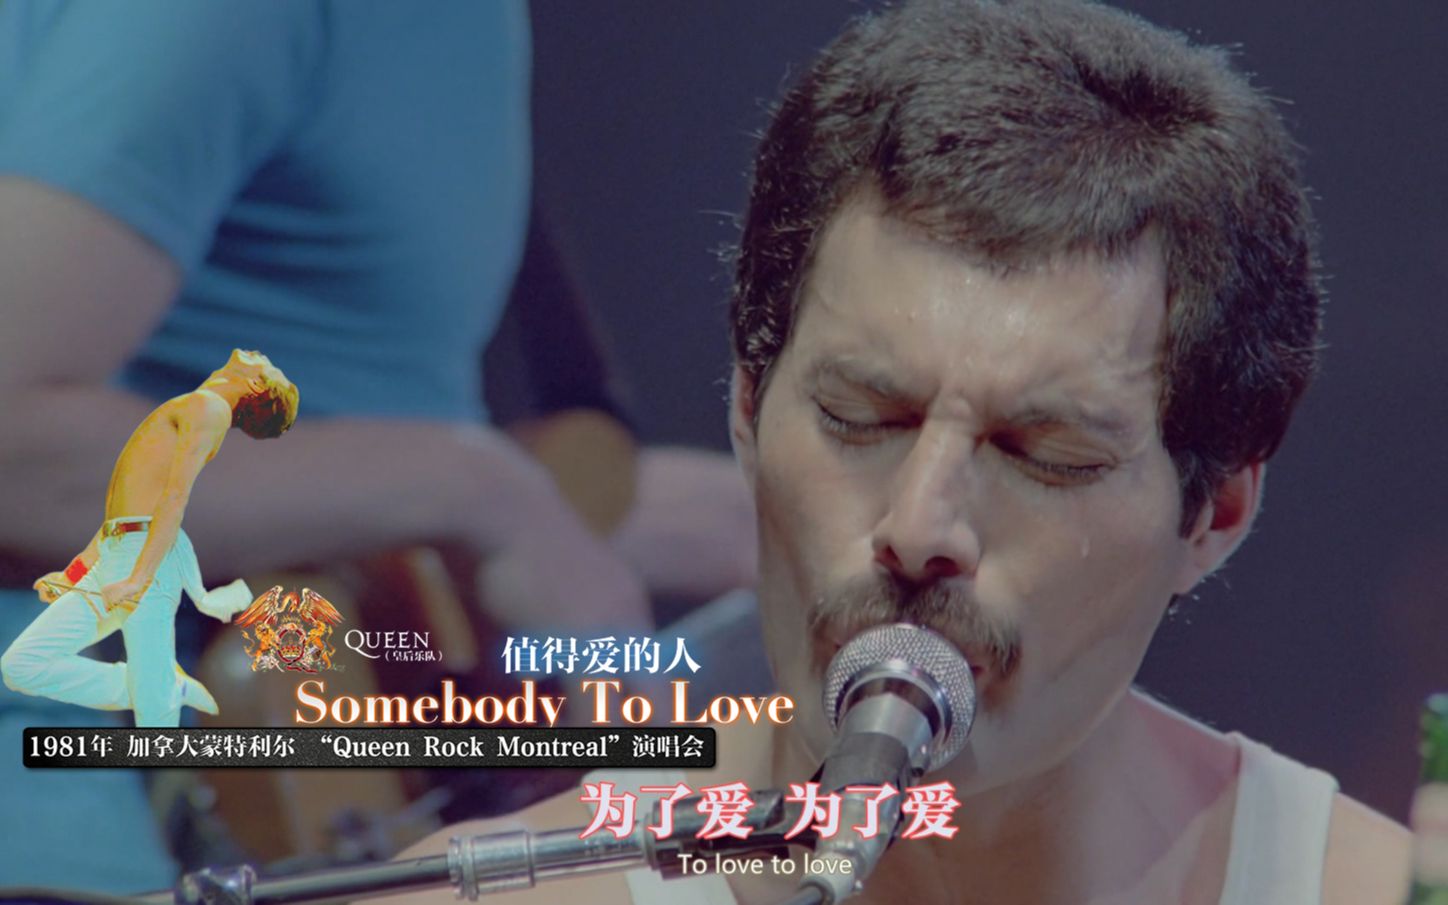 【皇后乐队】难度最高的歌曲《Somebody To Love》中英字幕